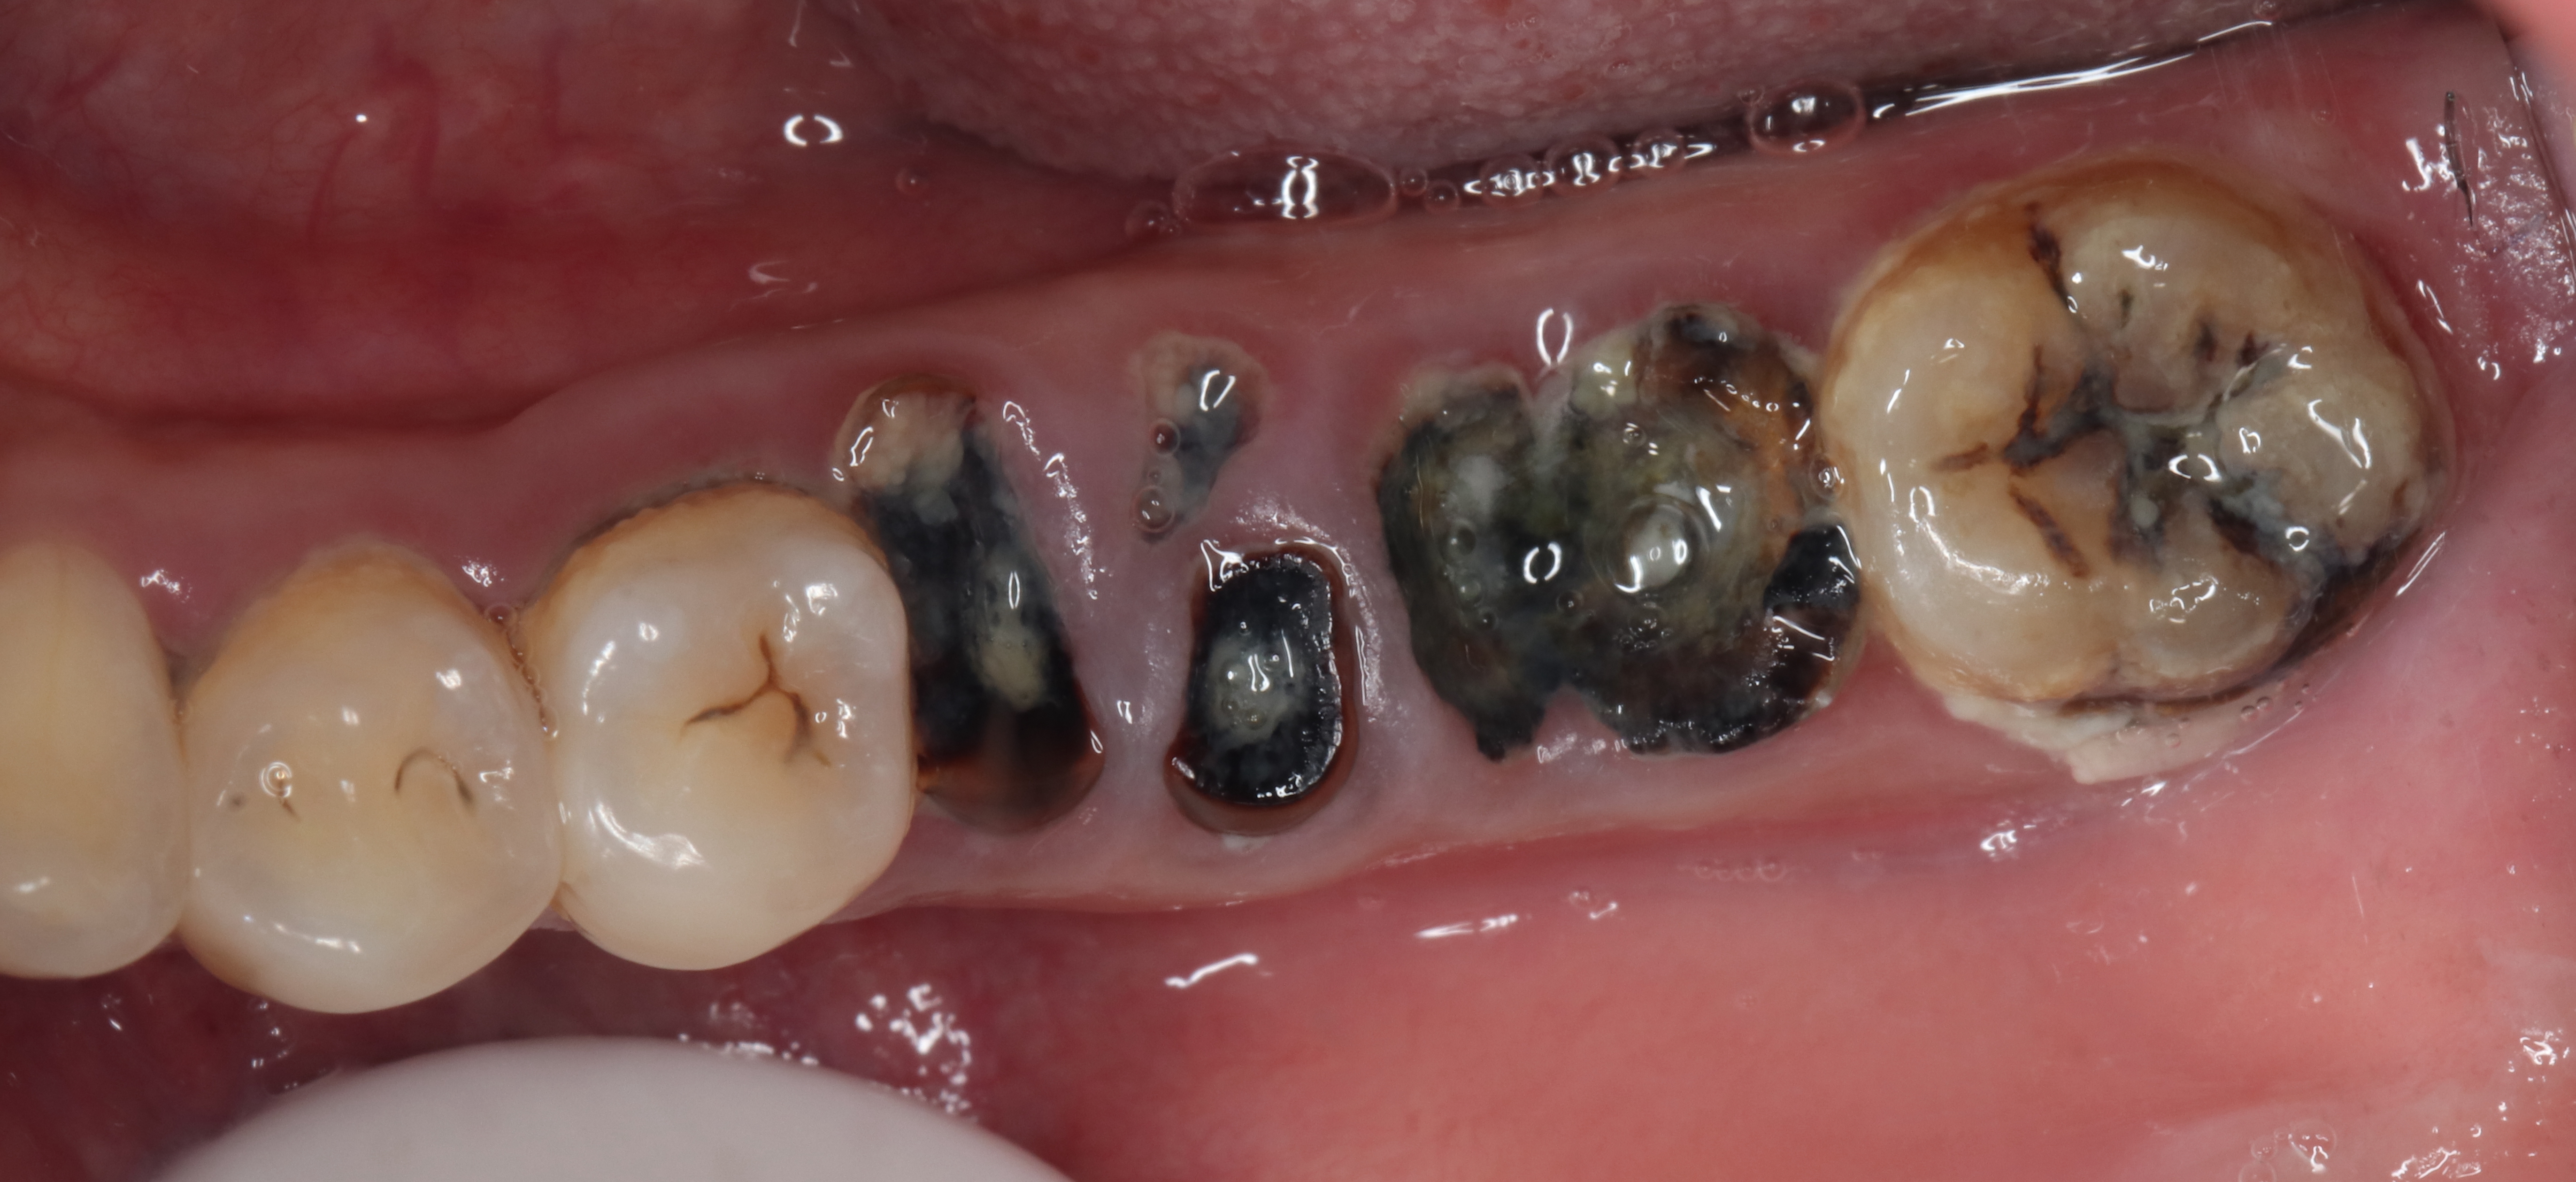 很多时候牙齿开始出问题,没有影响牙神经前可能就有些塞牙症状,表面看